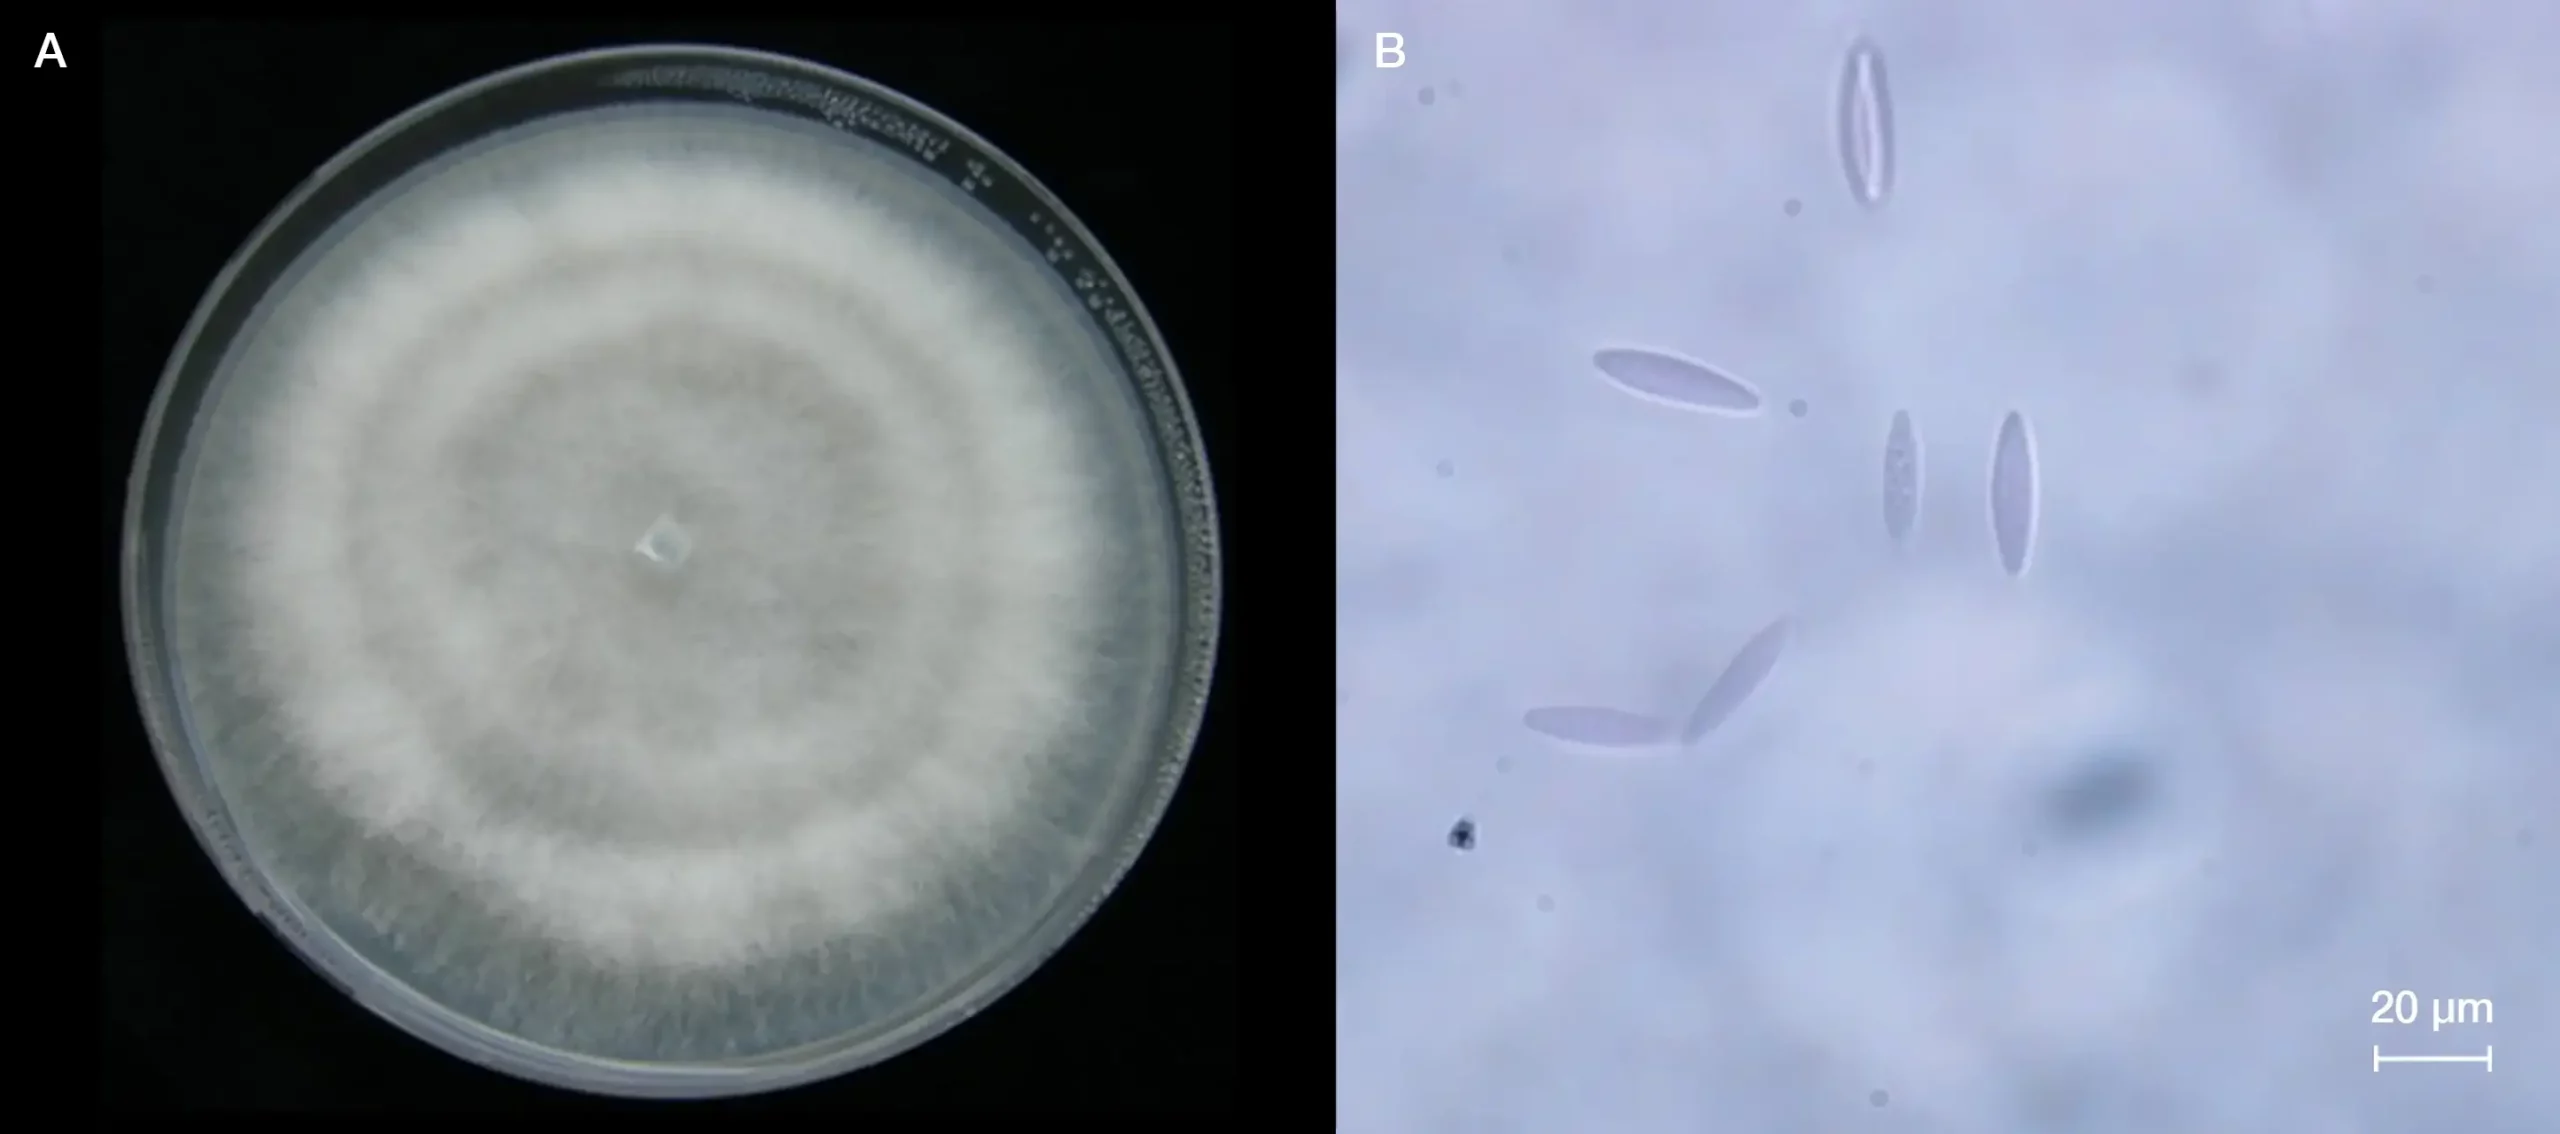 Figura 7. A) Colonia de Neofusicoccum mediterraneum desarrollada en medio de cultivo patata dextrosa agar (PDA) durante 7 días en oscuridad; B) conidios típicos de N. mediterraneum observados mediante miscroscopio óptico.